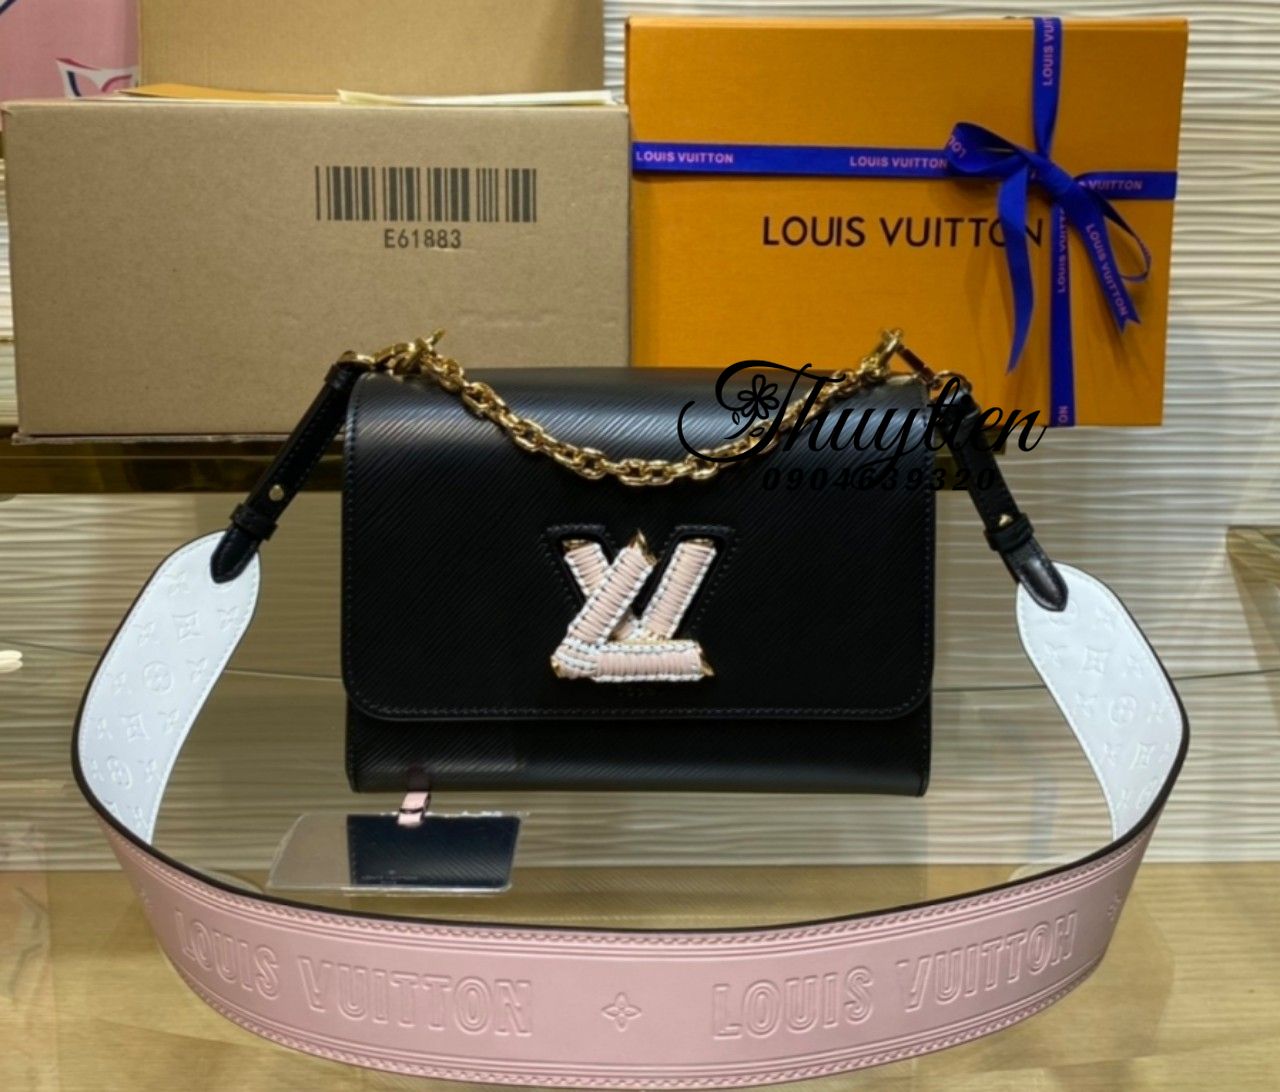 Túi Xách Louis Vuitton Twist Chuẩn Vip - Chuyên Giỏ Xách Hàng Hiệu Like Auth